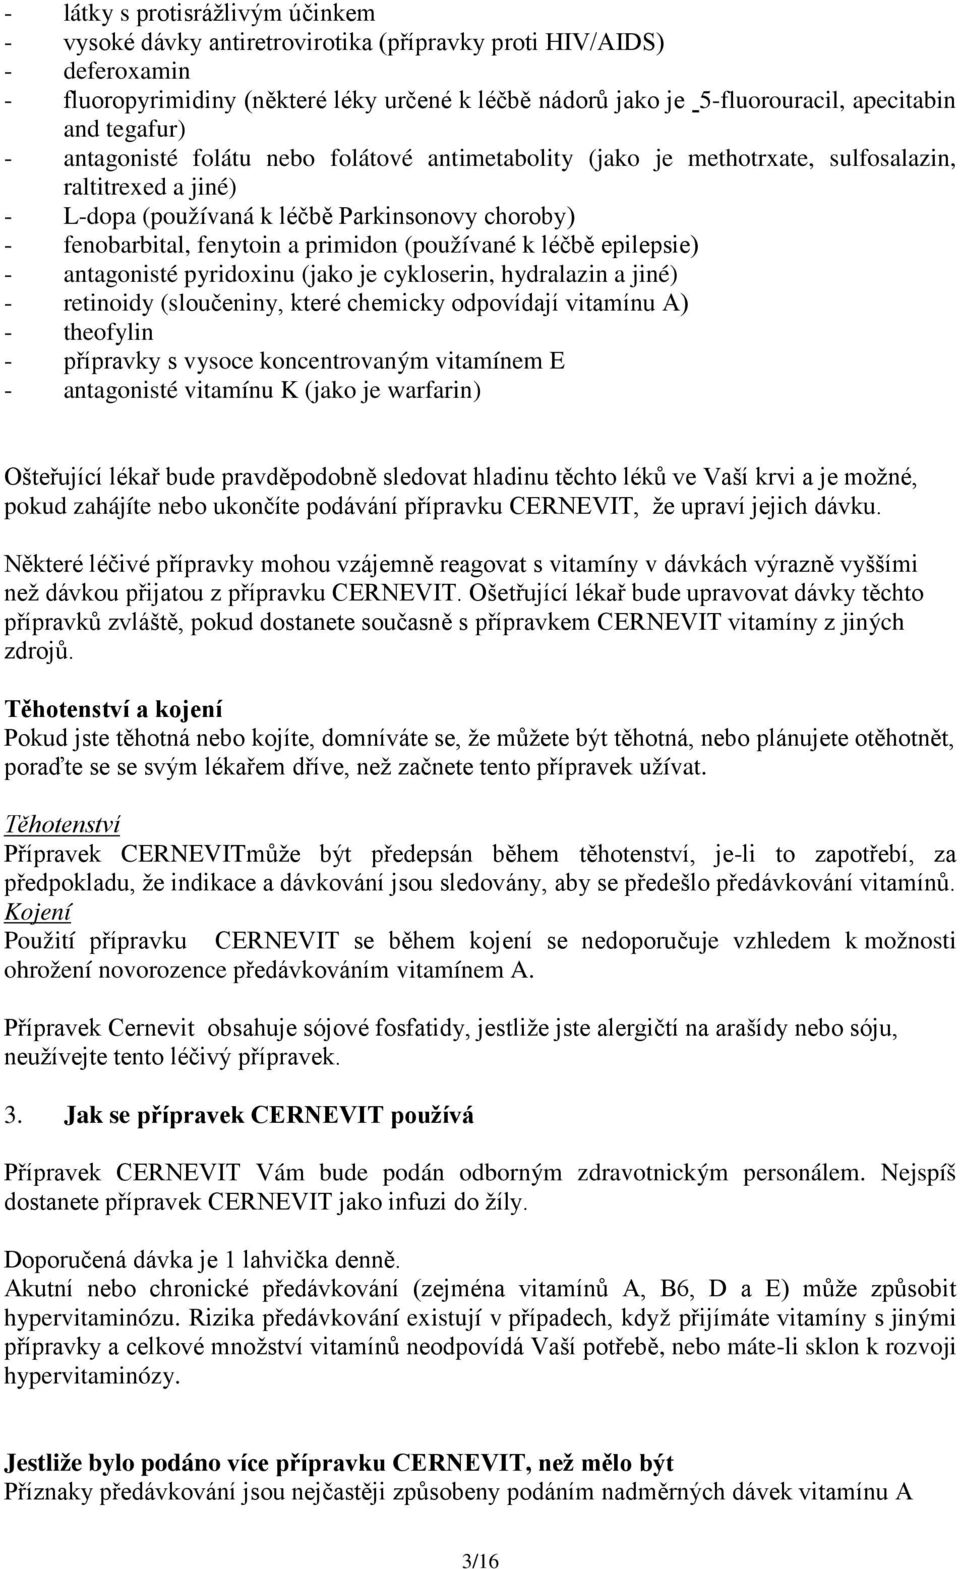 primidon (používané k léčbě epilepsie) - antagonisté pyridoxinu (jako je cykloserin, hydralazin a jiné) - retinoidy (sloučeniny, které chemicky odpovídají vitamínu A) - theofylin - přípravky s vysoce